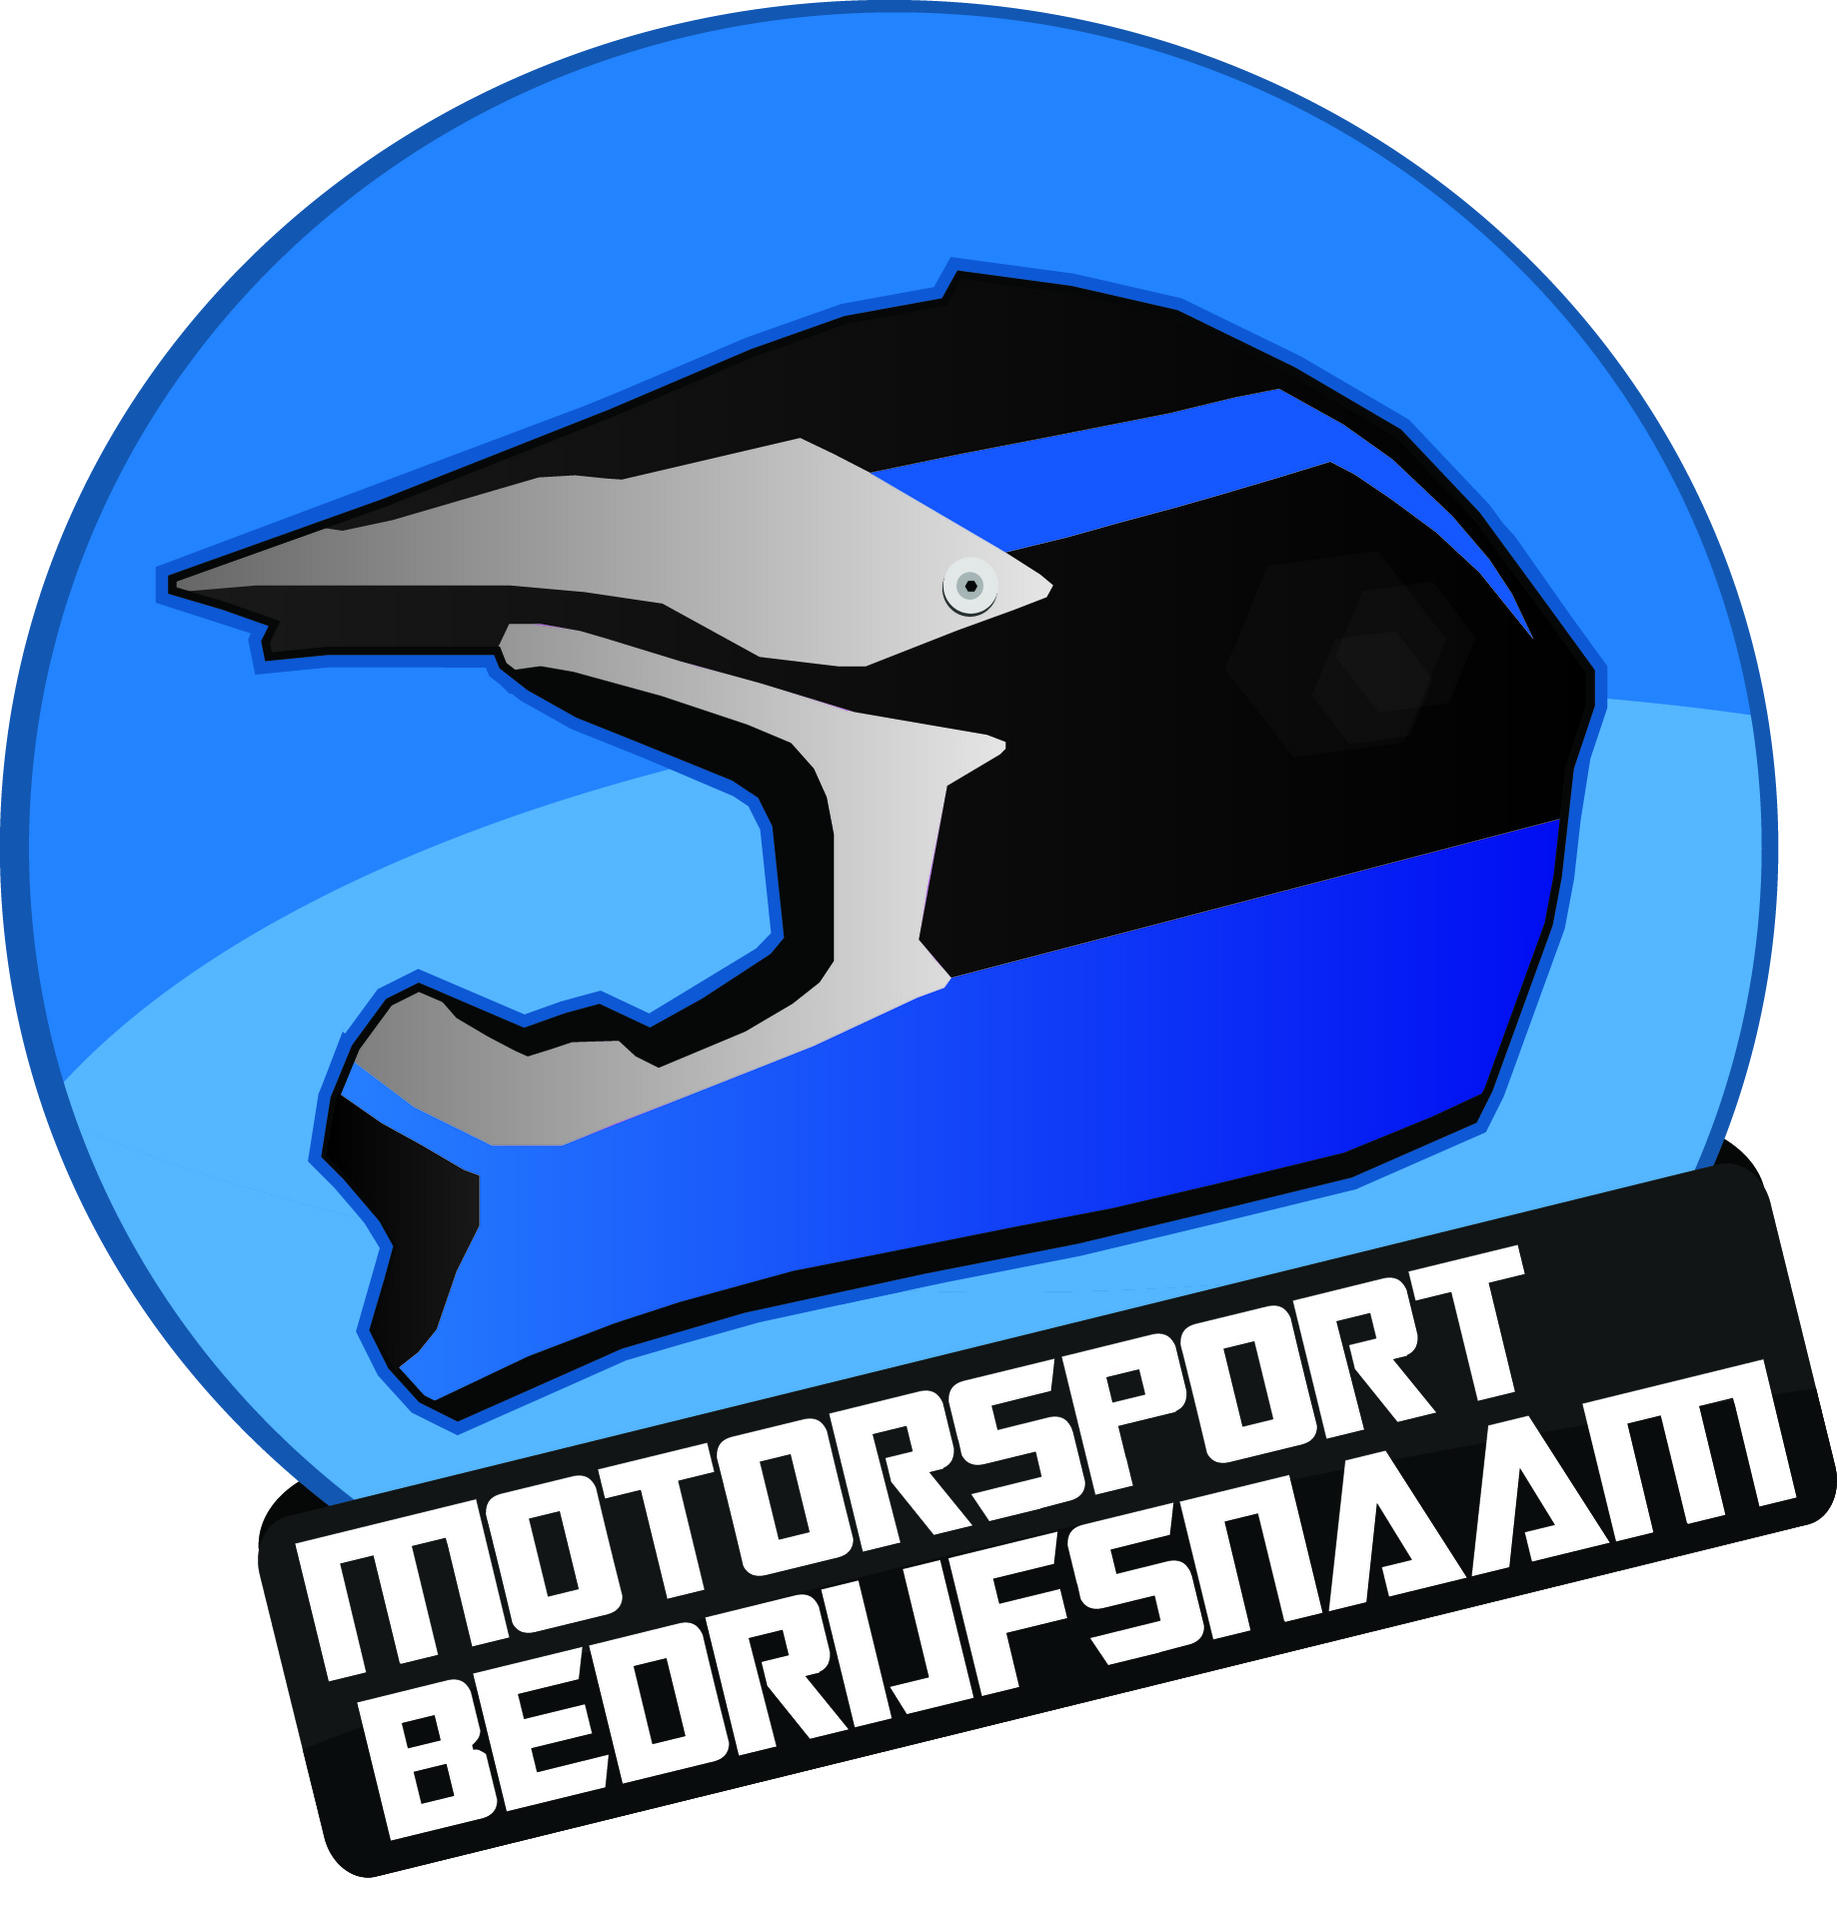 Logo Motor/Autosport-crosshelm-groot-gradient-rondje-jpg